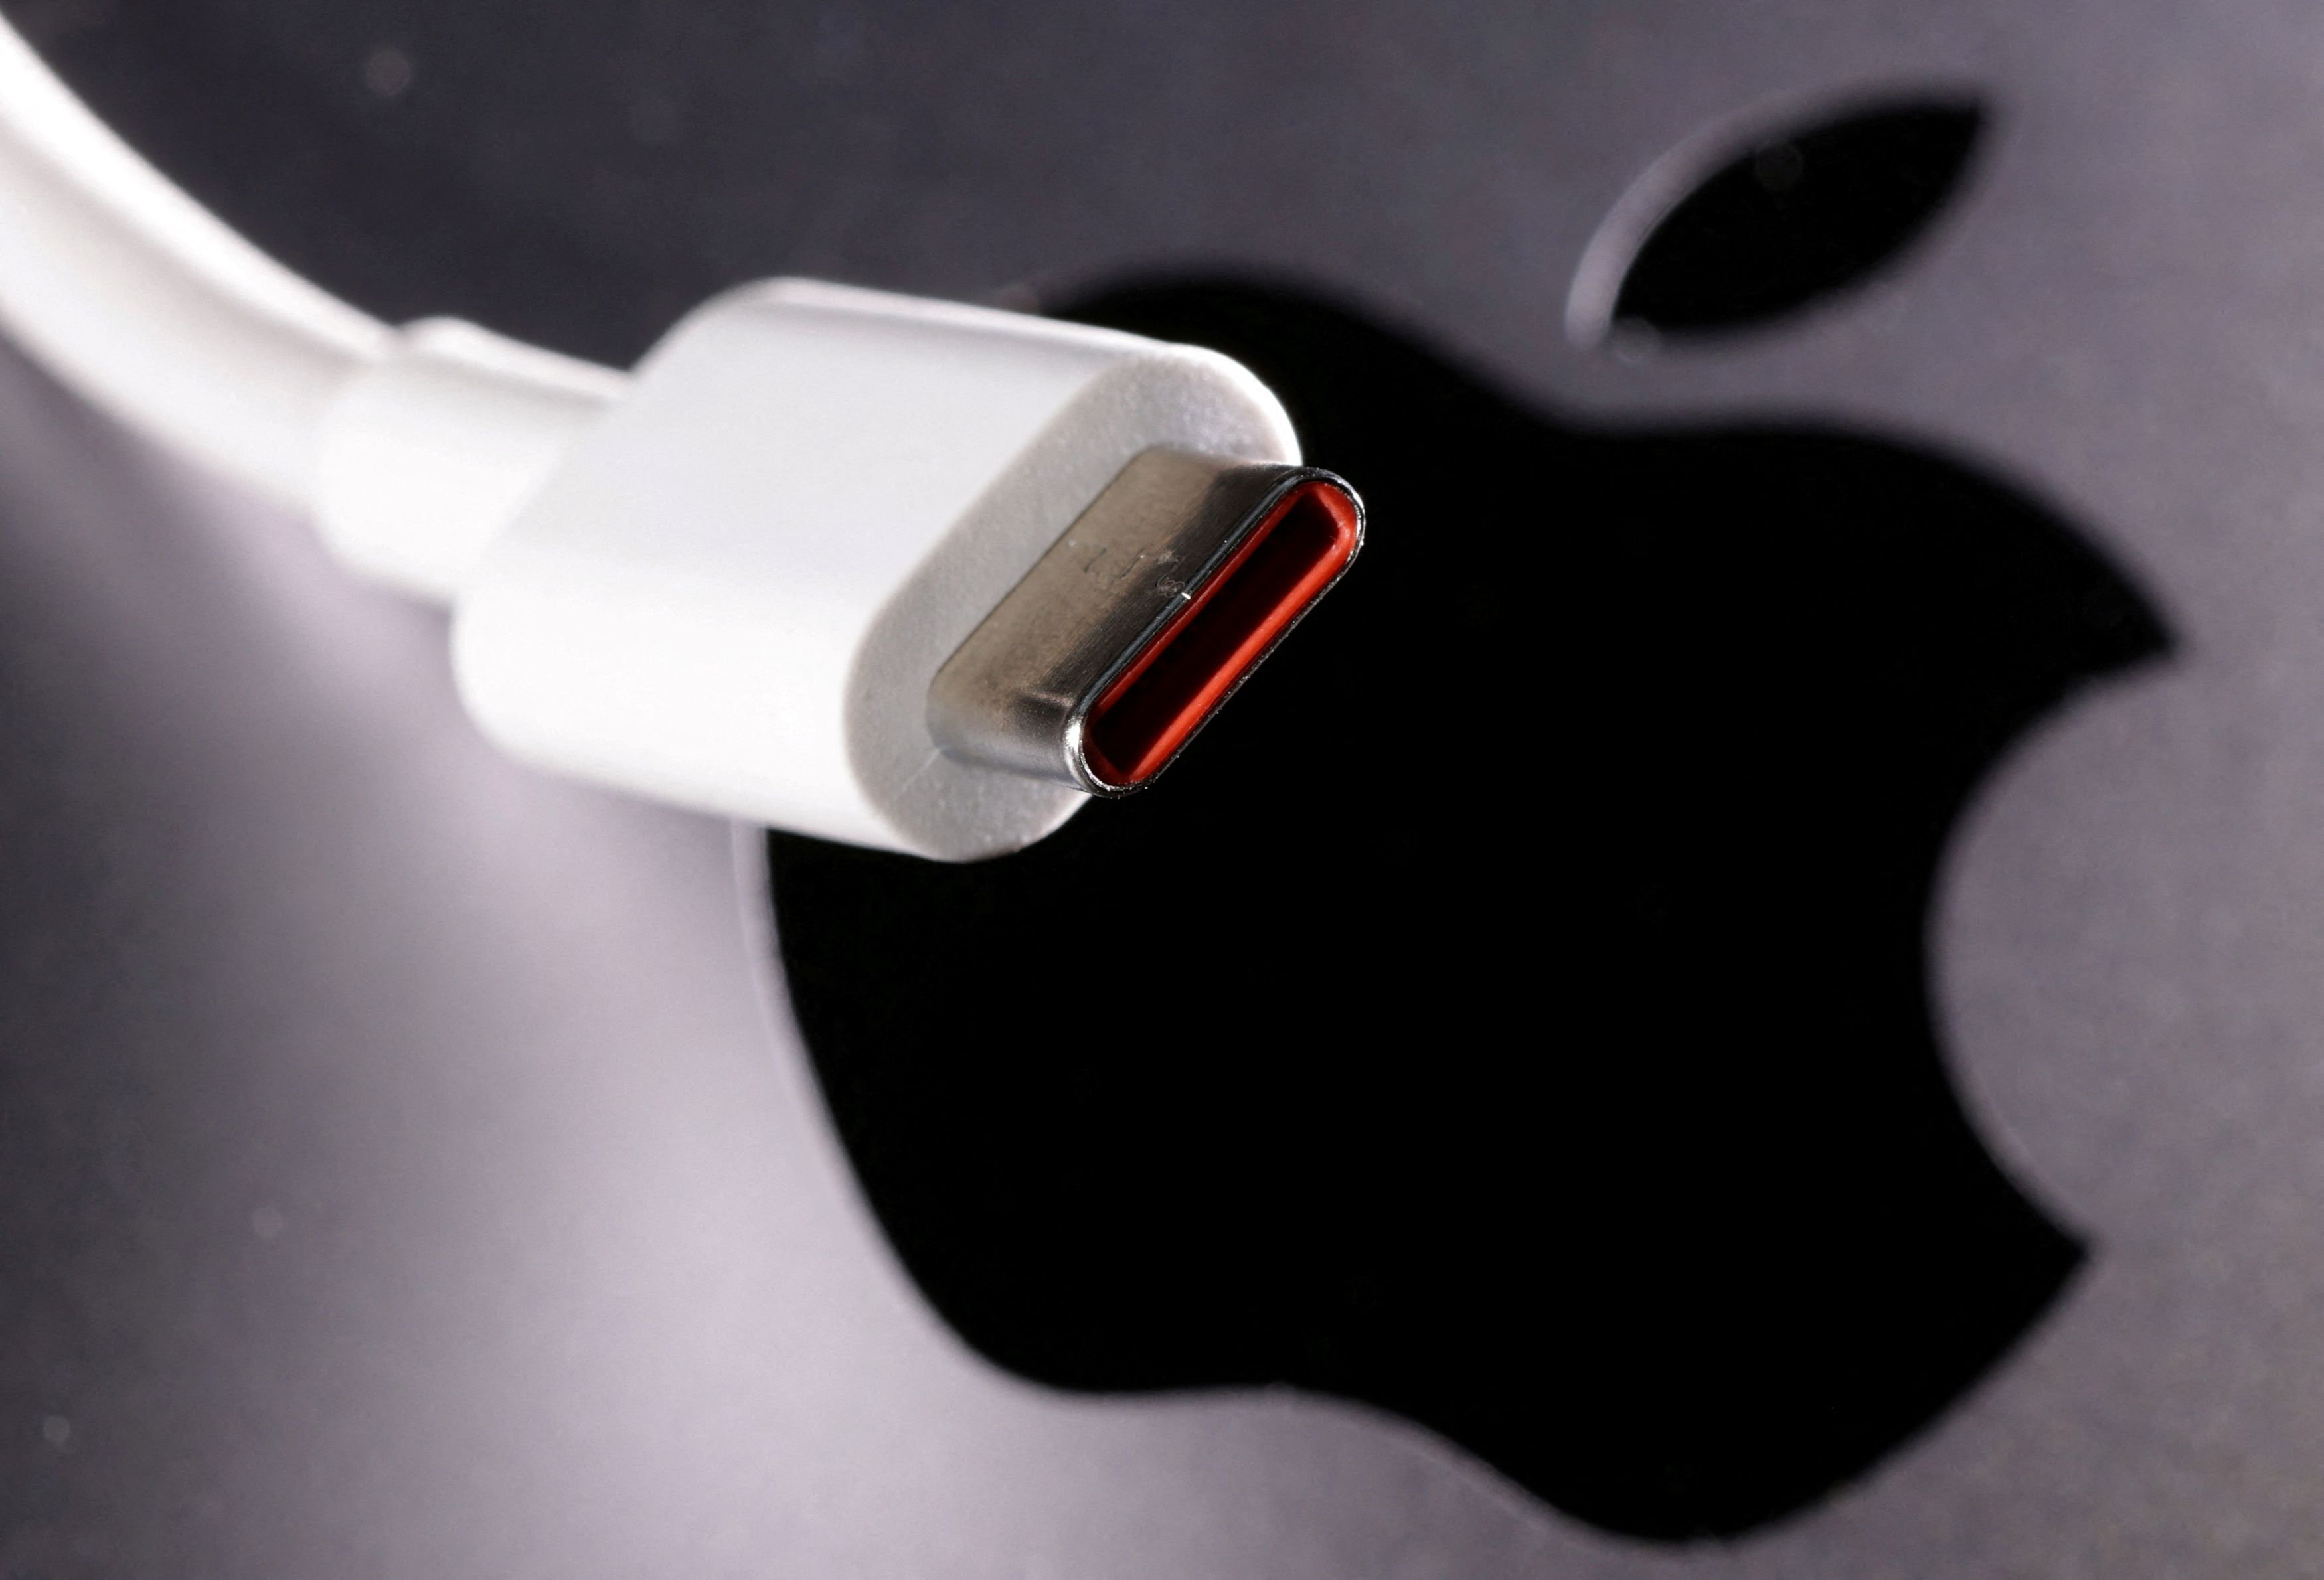 Apple iPhone 12 - Quel chargeur choisir ? - Actualité - UFC-Que Choisir